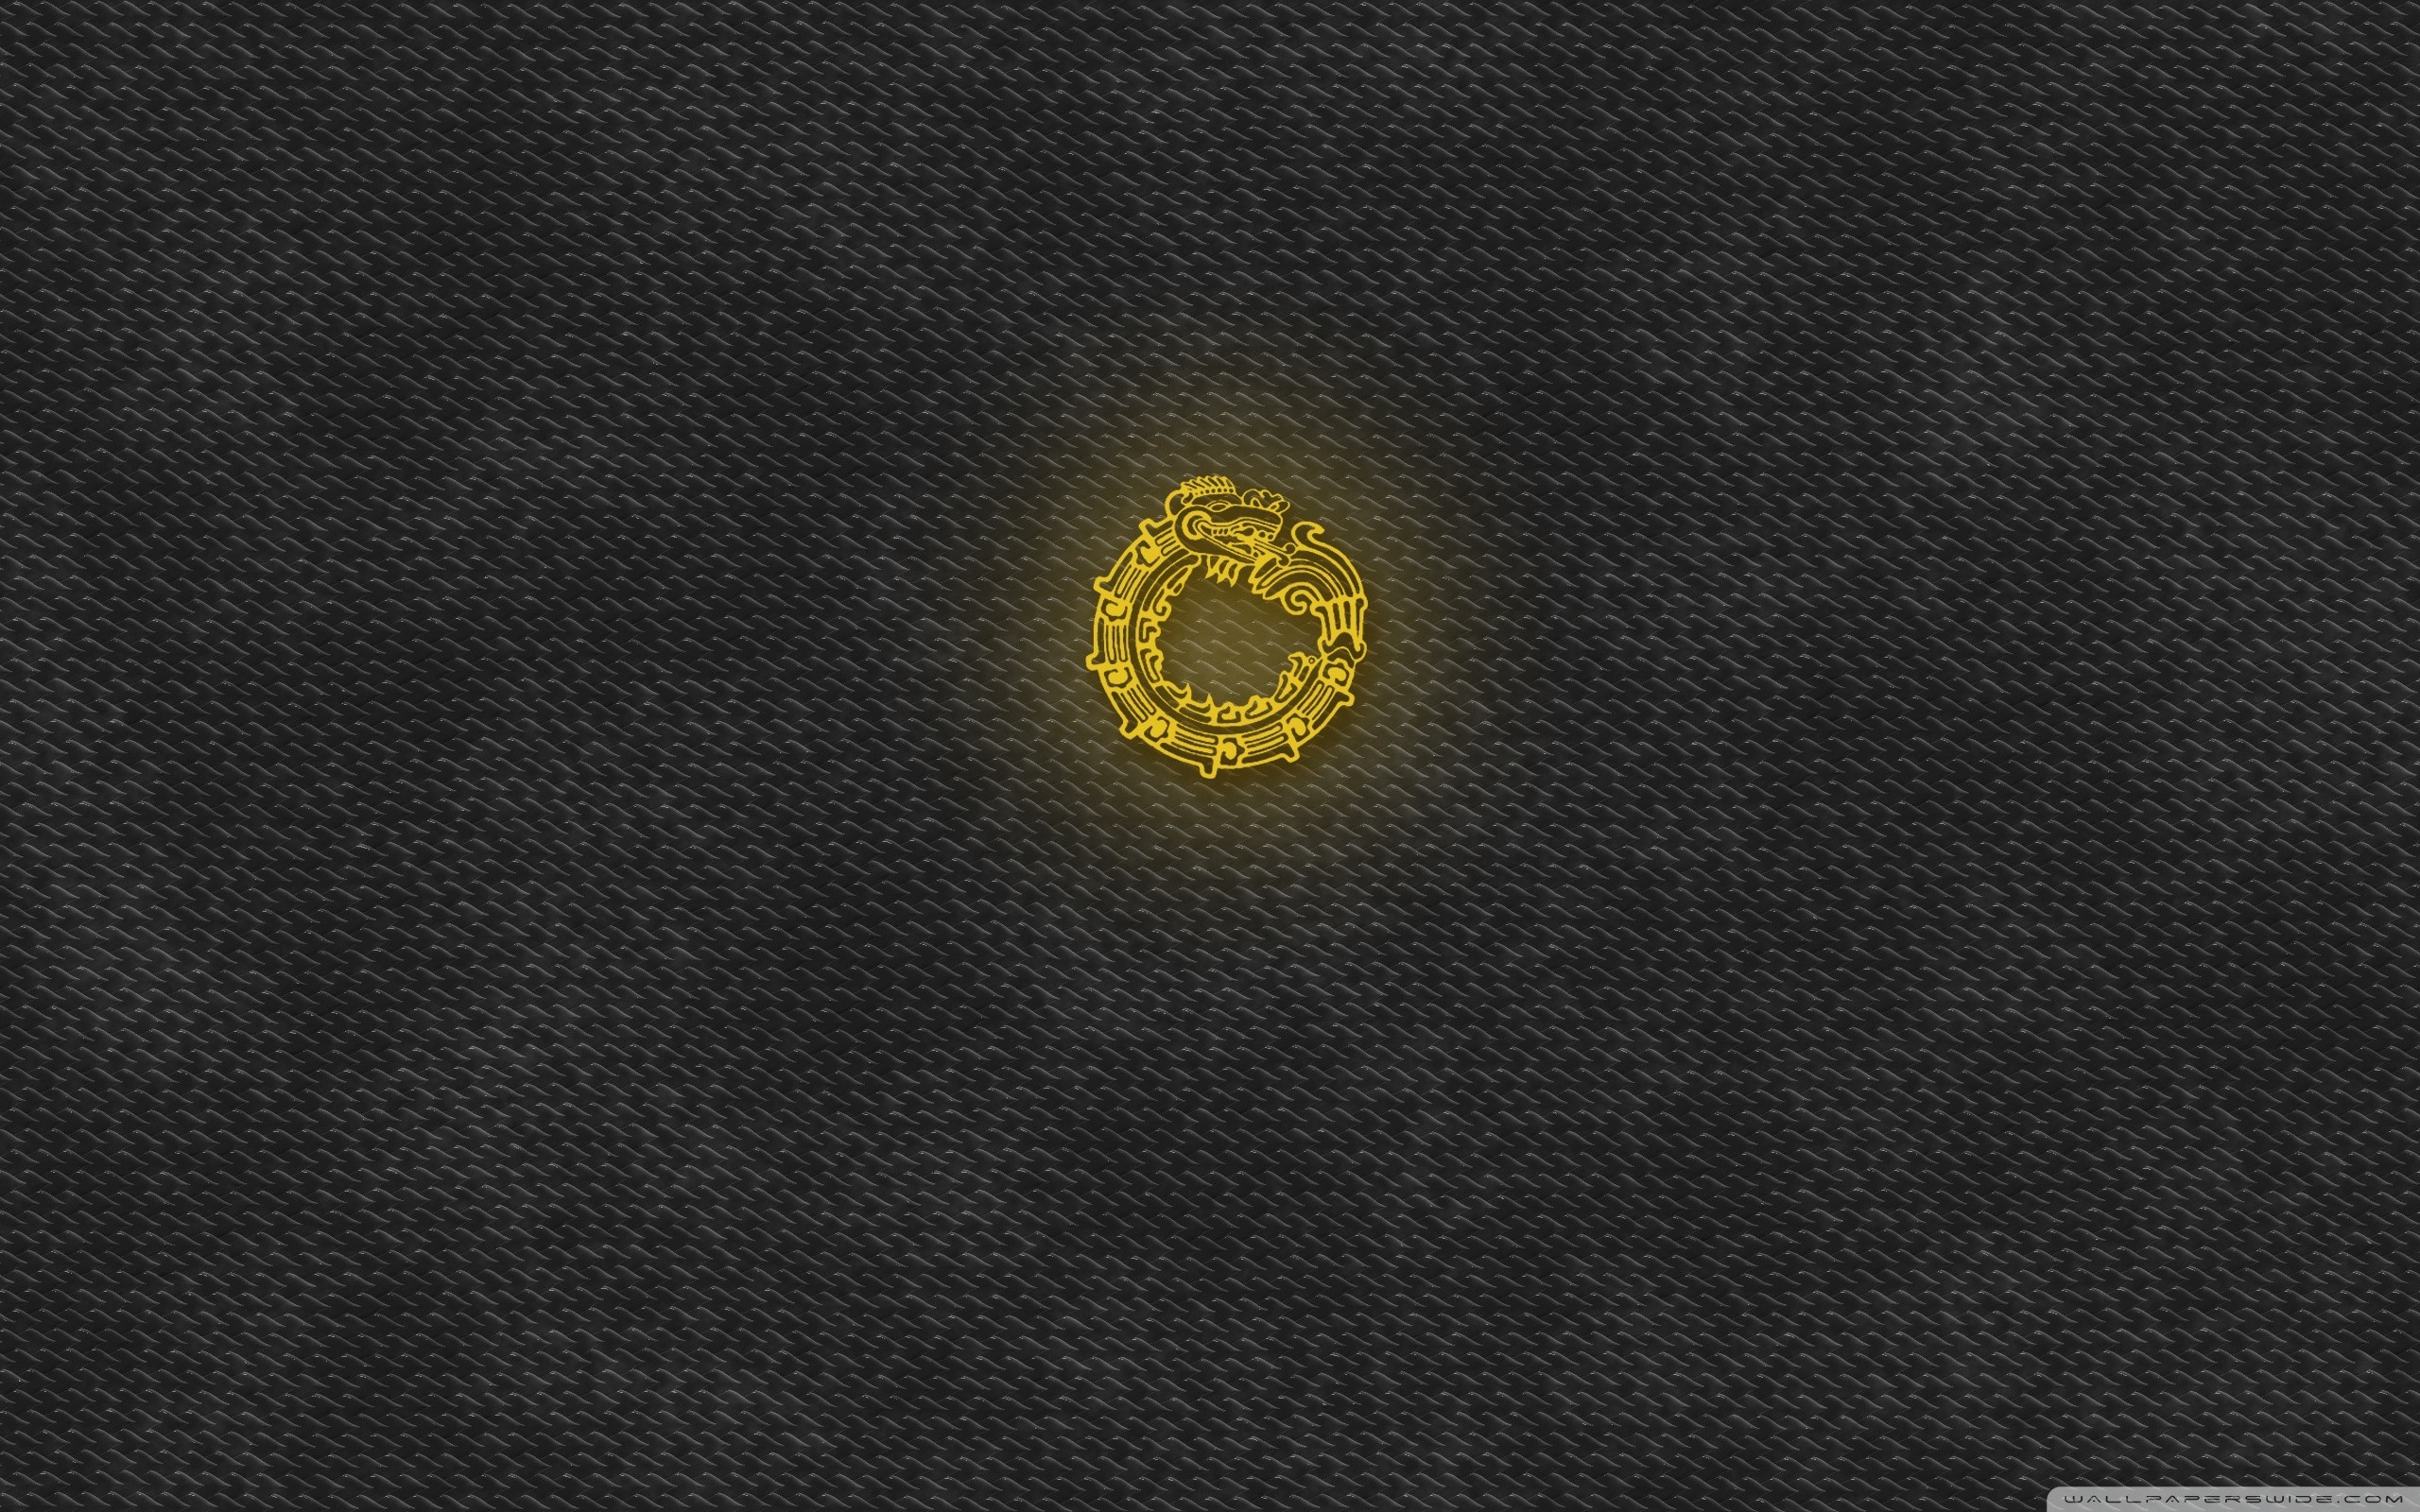 Ouroboros Logo Dragon Circle 2560x1600